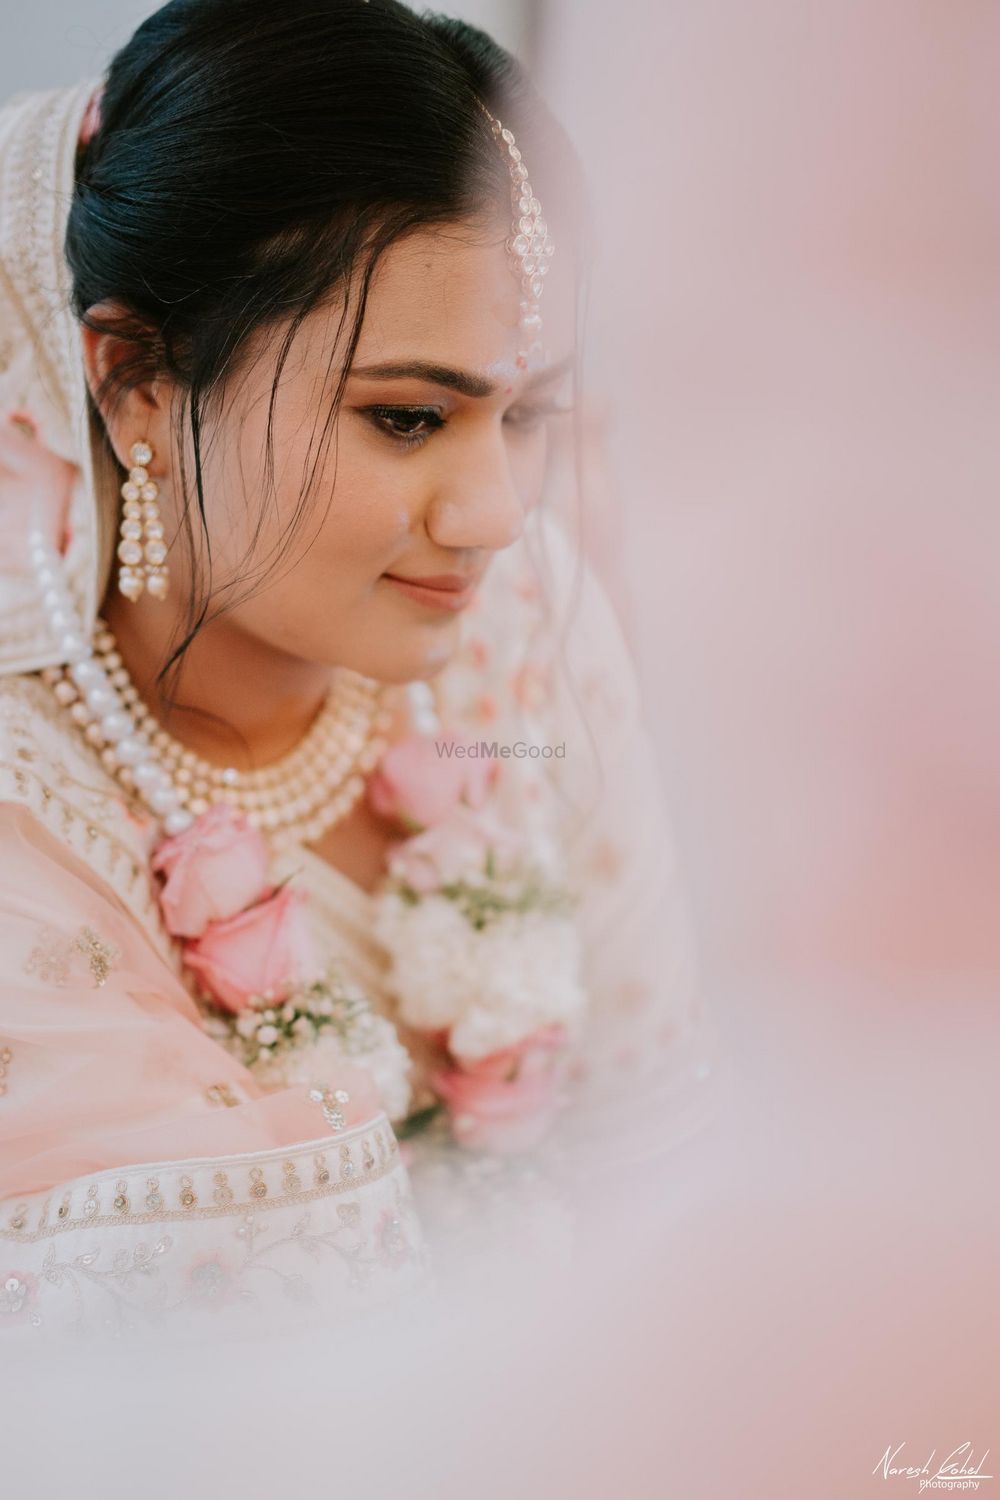 Photo From Kush x Mirna - By Banna Baisa Wedding Planner